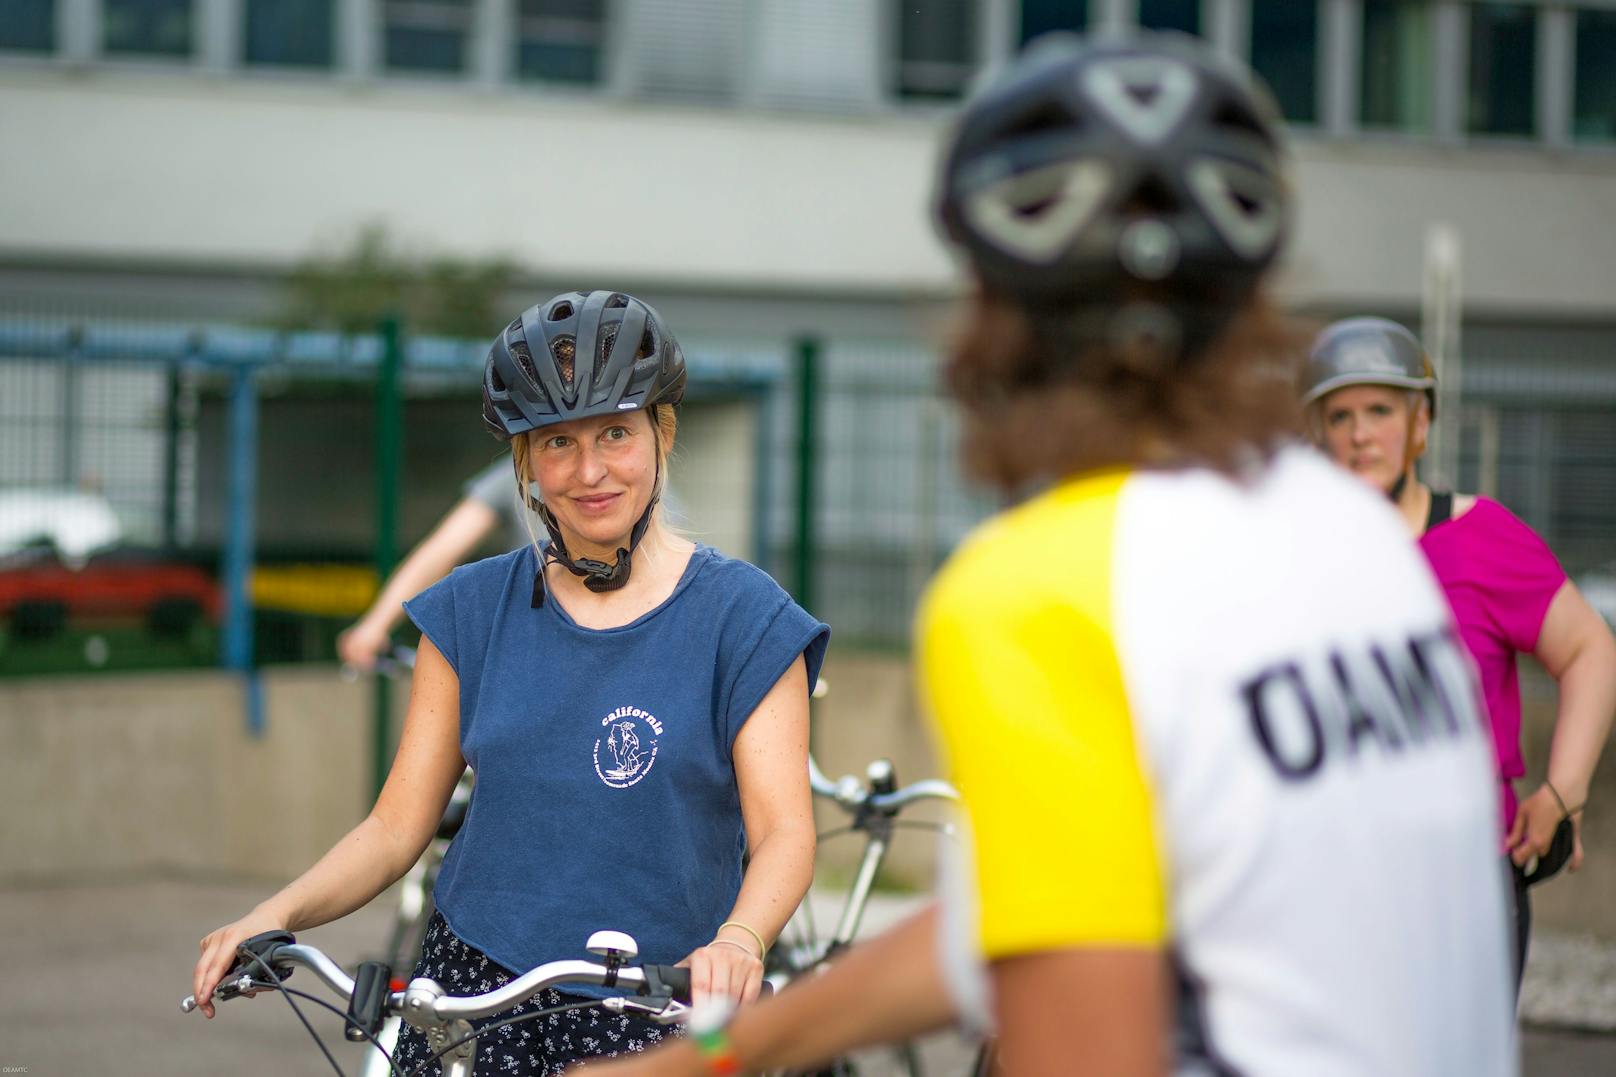 Durch das Erlernen des Radfahrens, gewinnen die Frauen mehr Mobilität, Selbstständigkeit und Selbstbewusstsein.